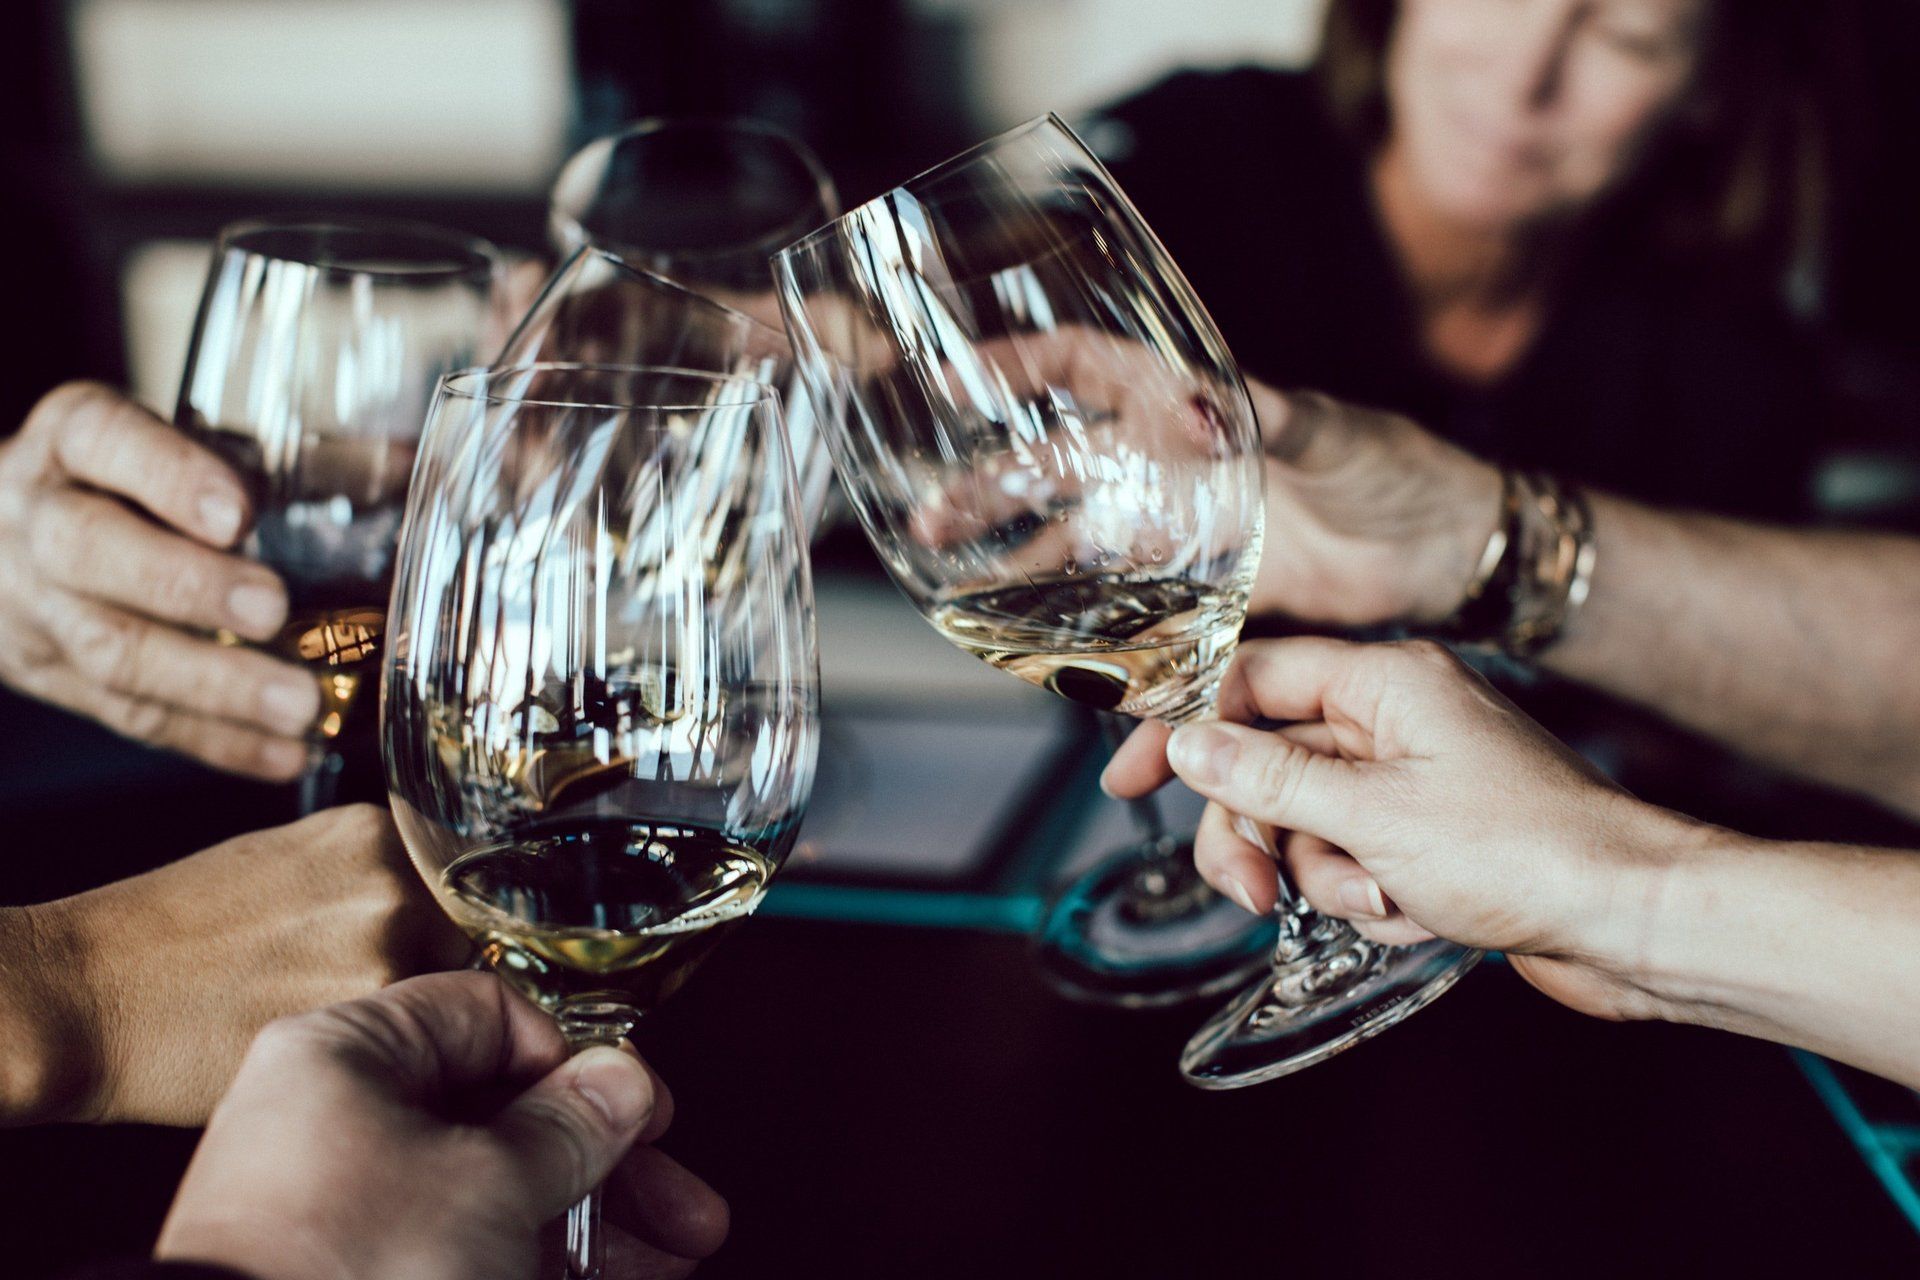 Un gruppo di persone sta brindando con calici di vino seduti a un tavolo.